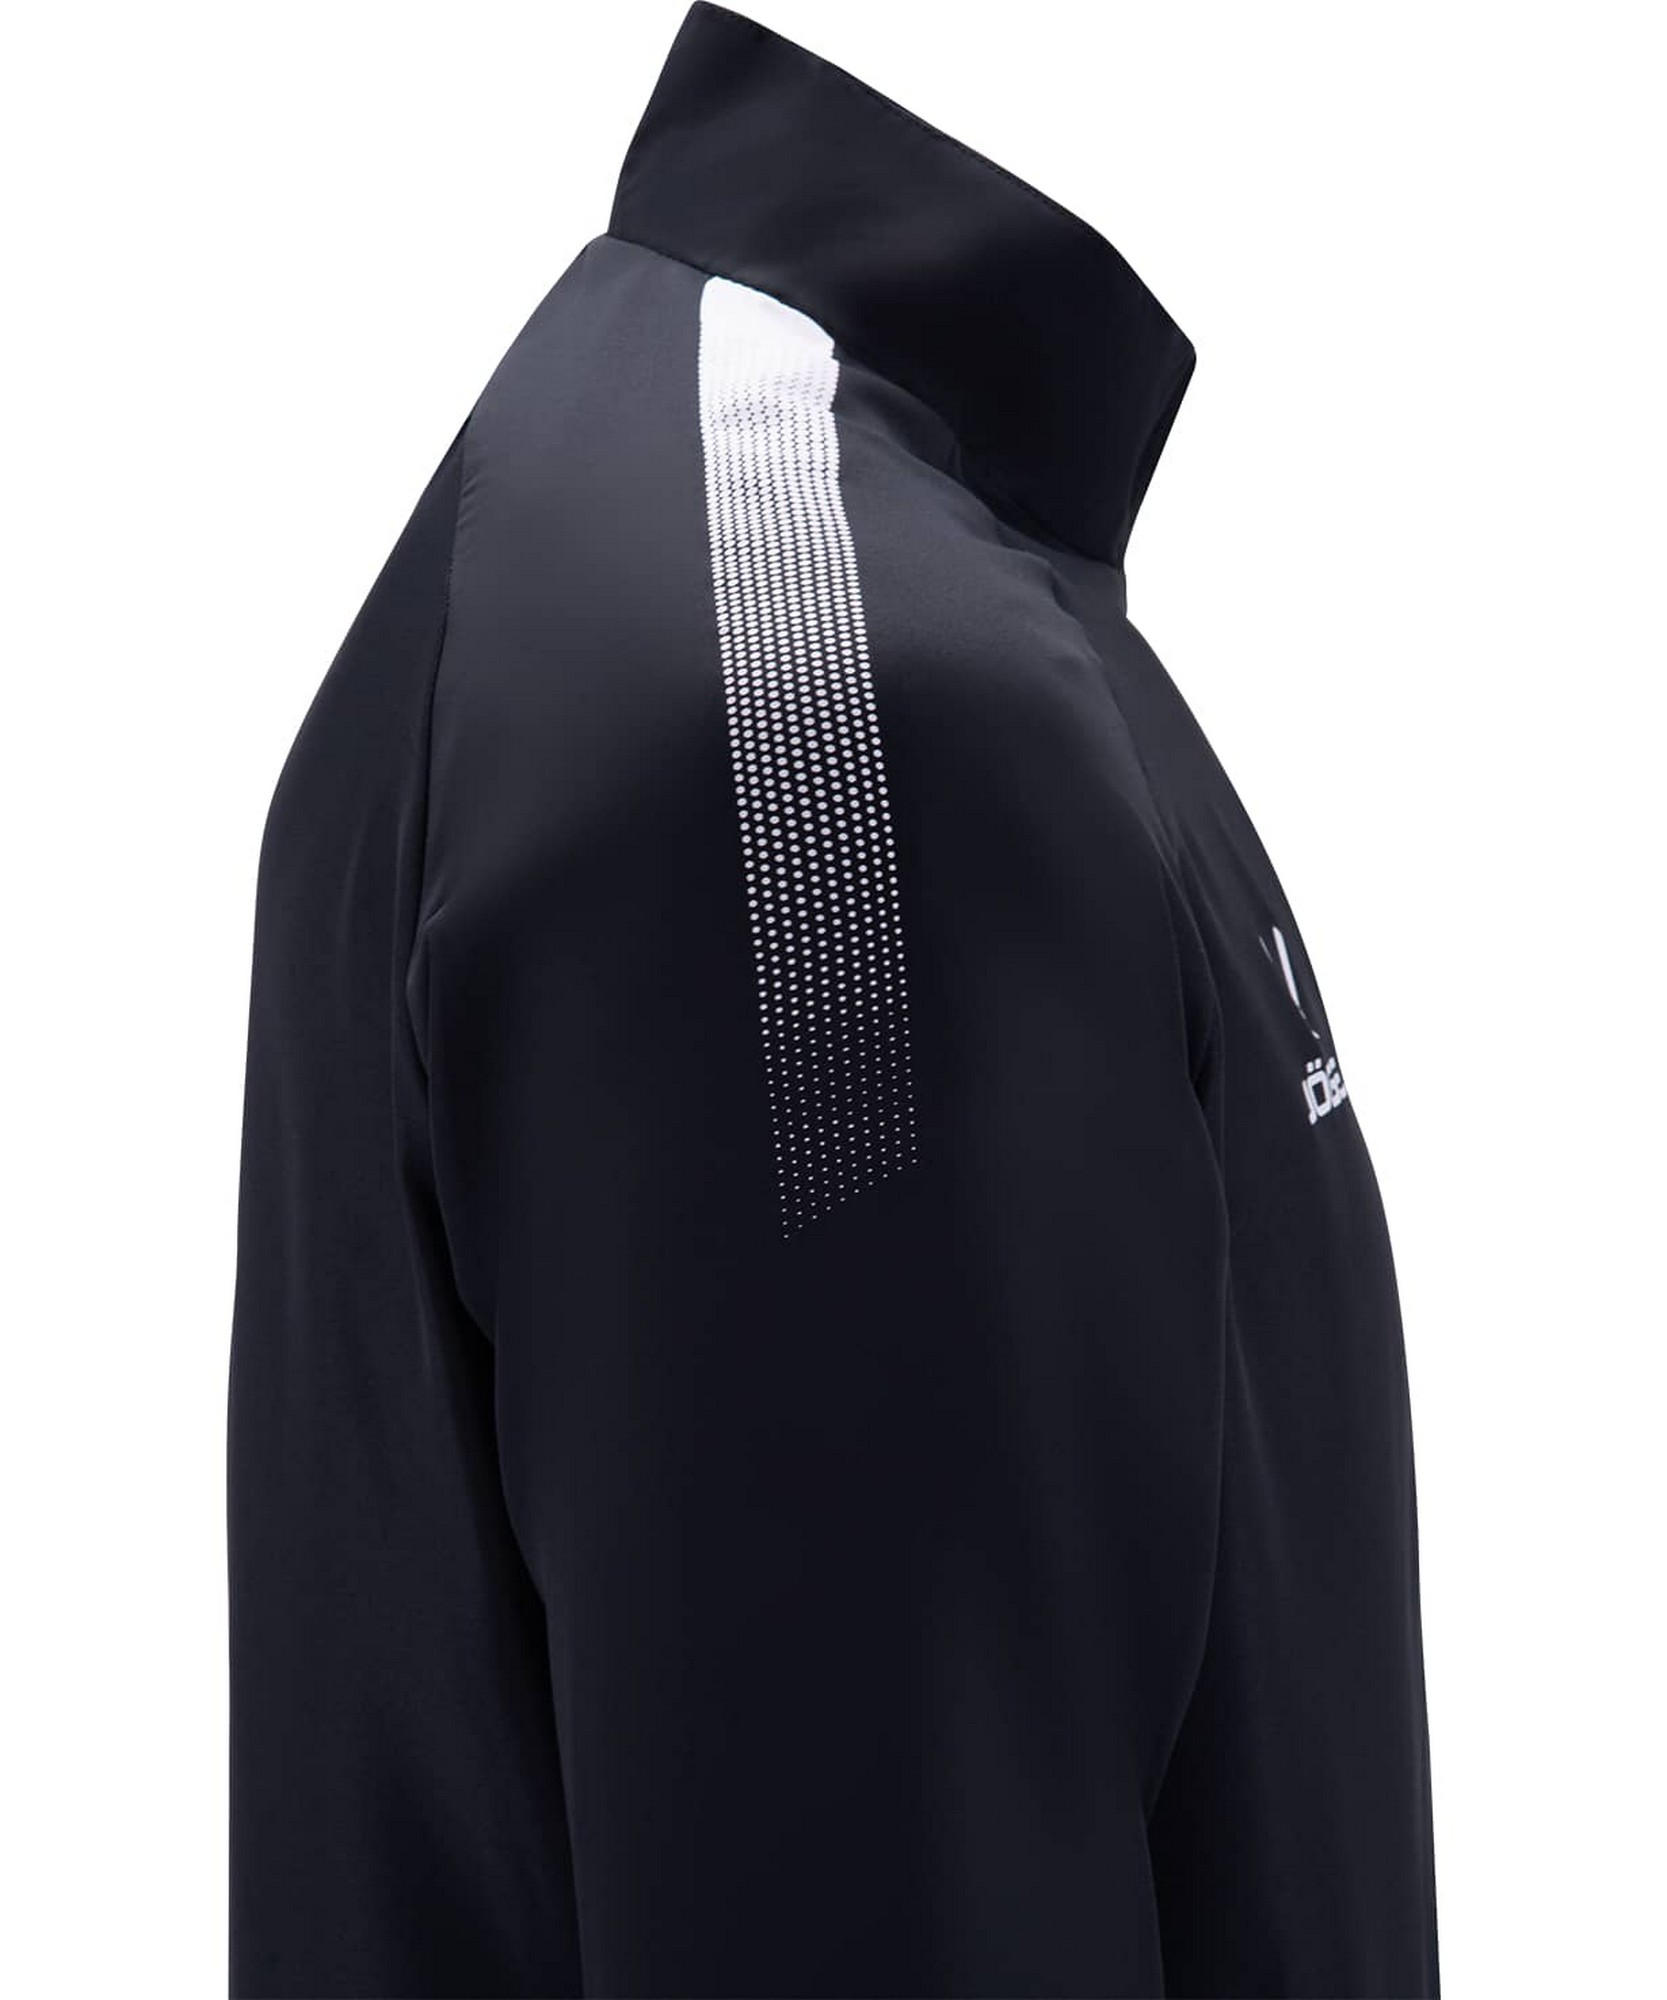 Костюм спортивный Jogel CAMP Lined Suit черный\черный 1667_2000